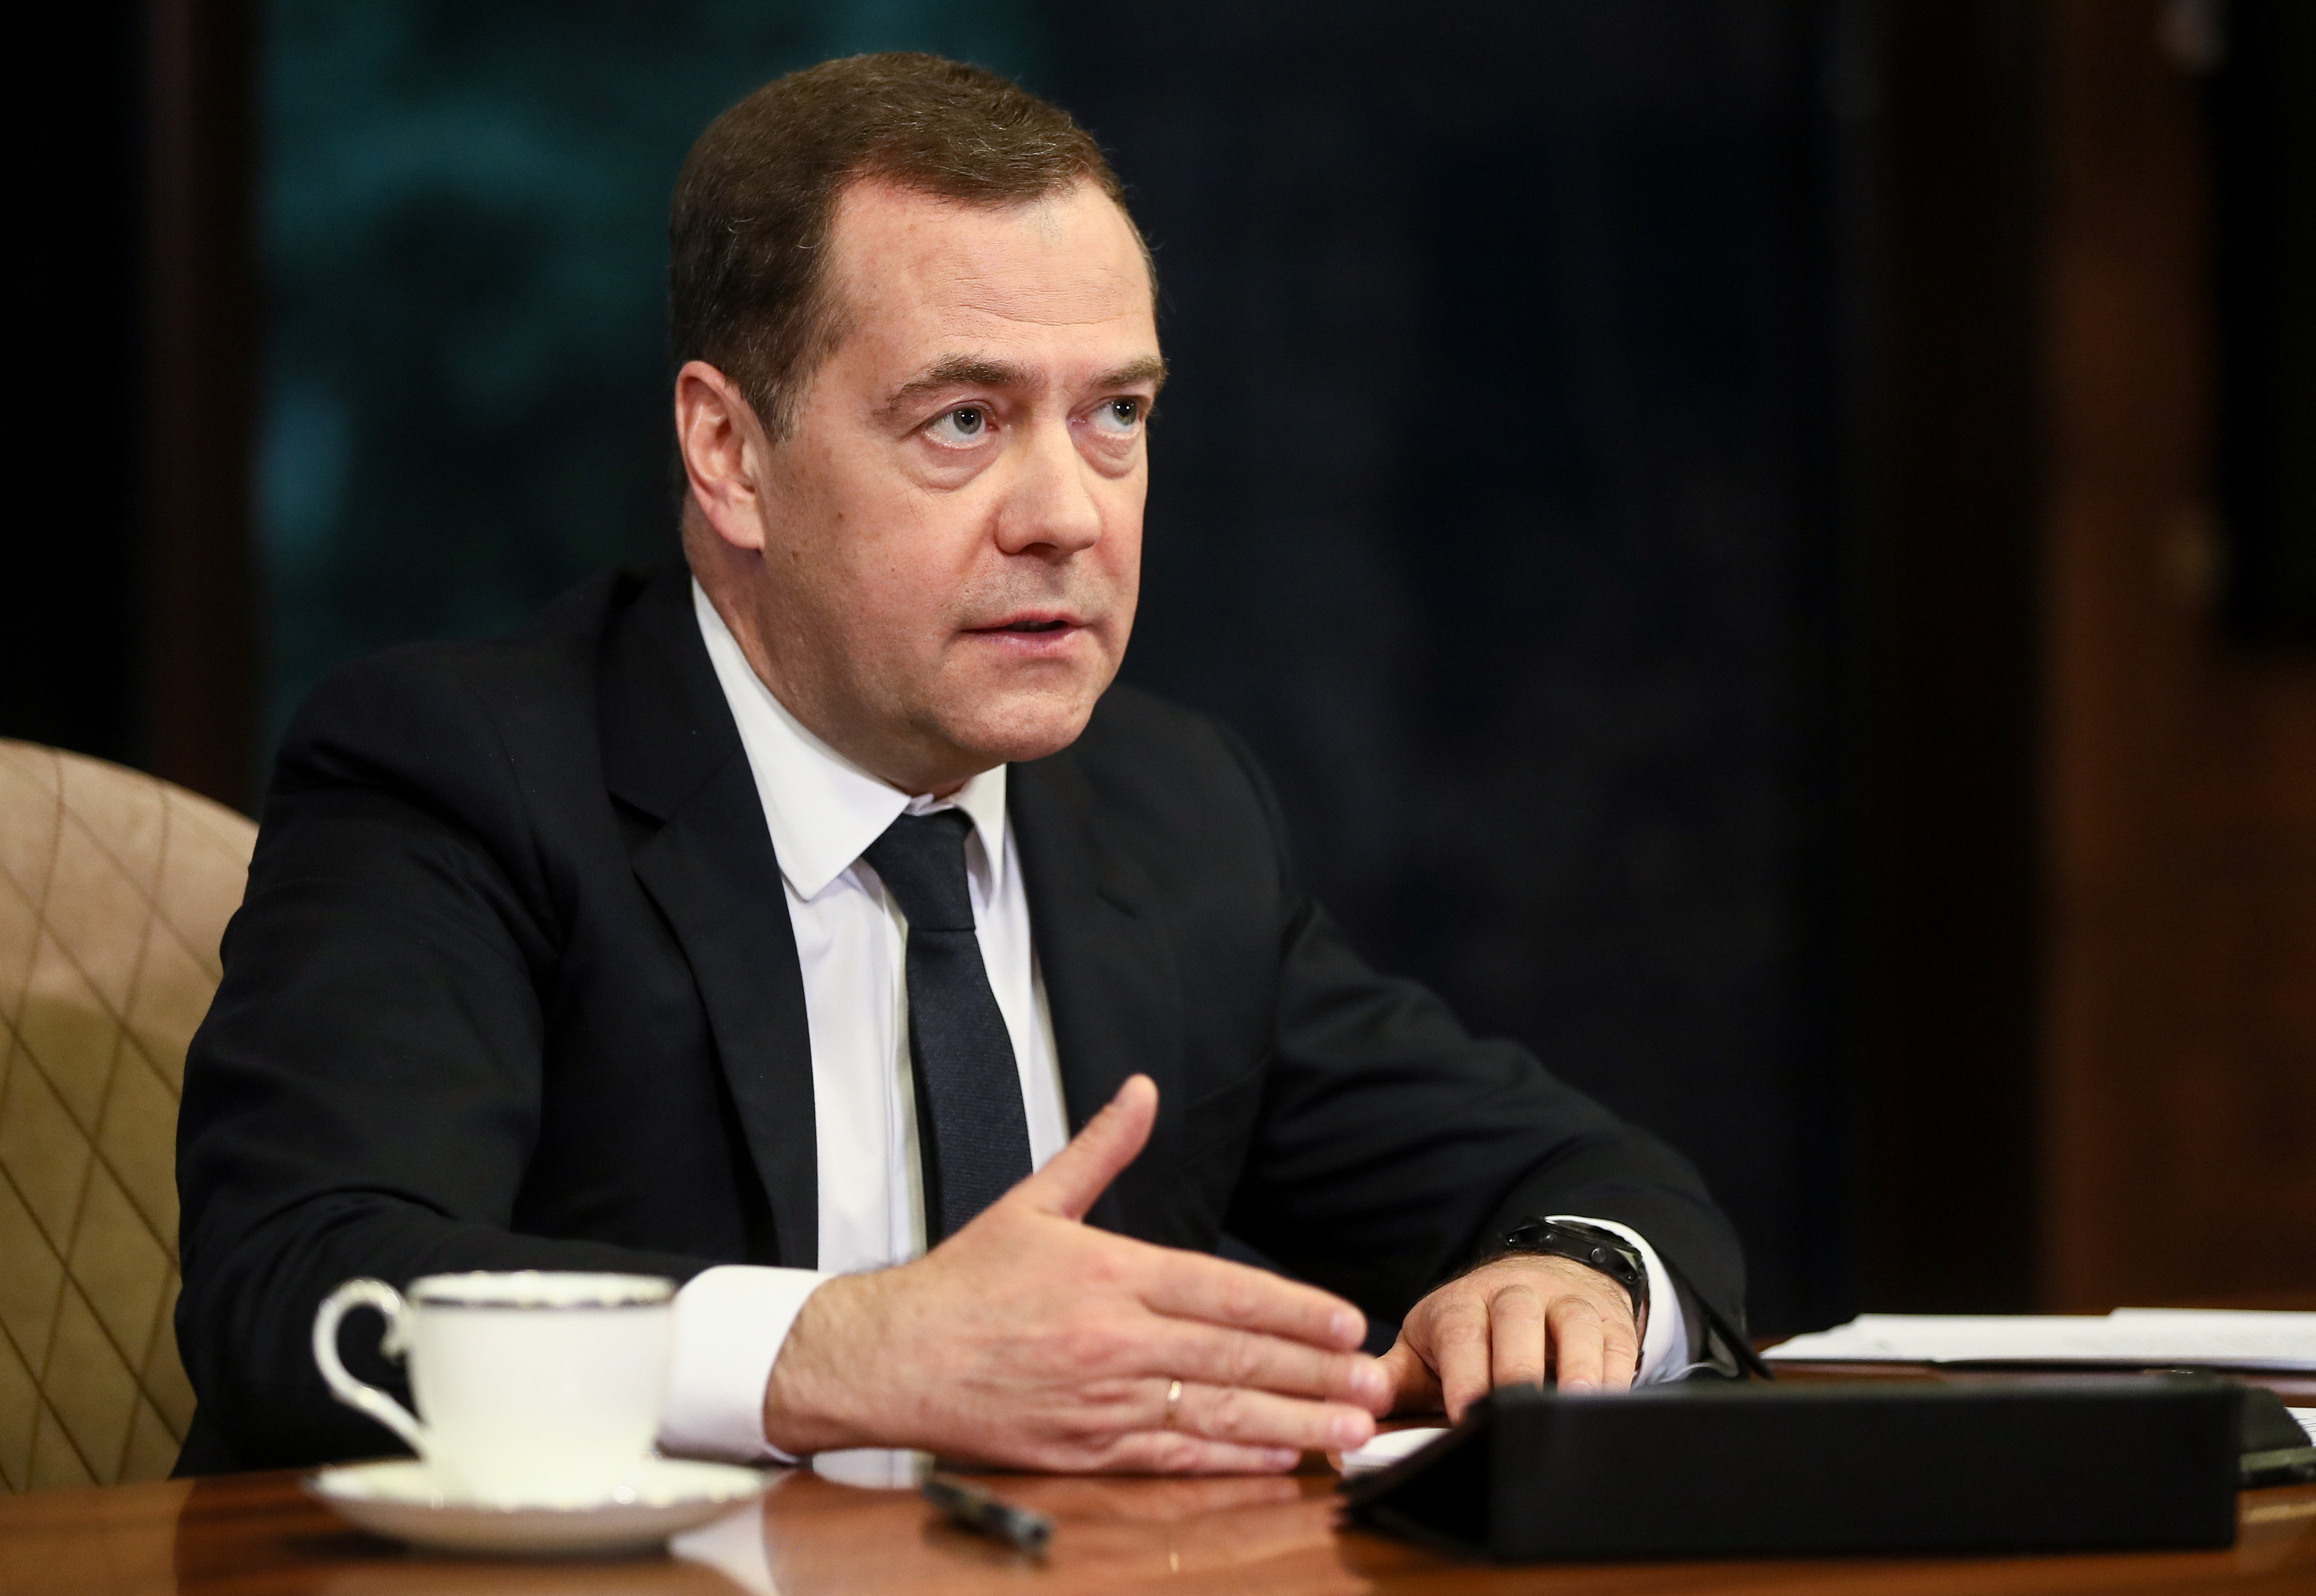 Медведев допустил отключение России от глобальной сети